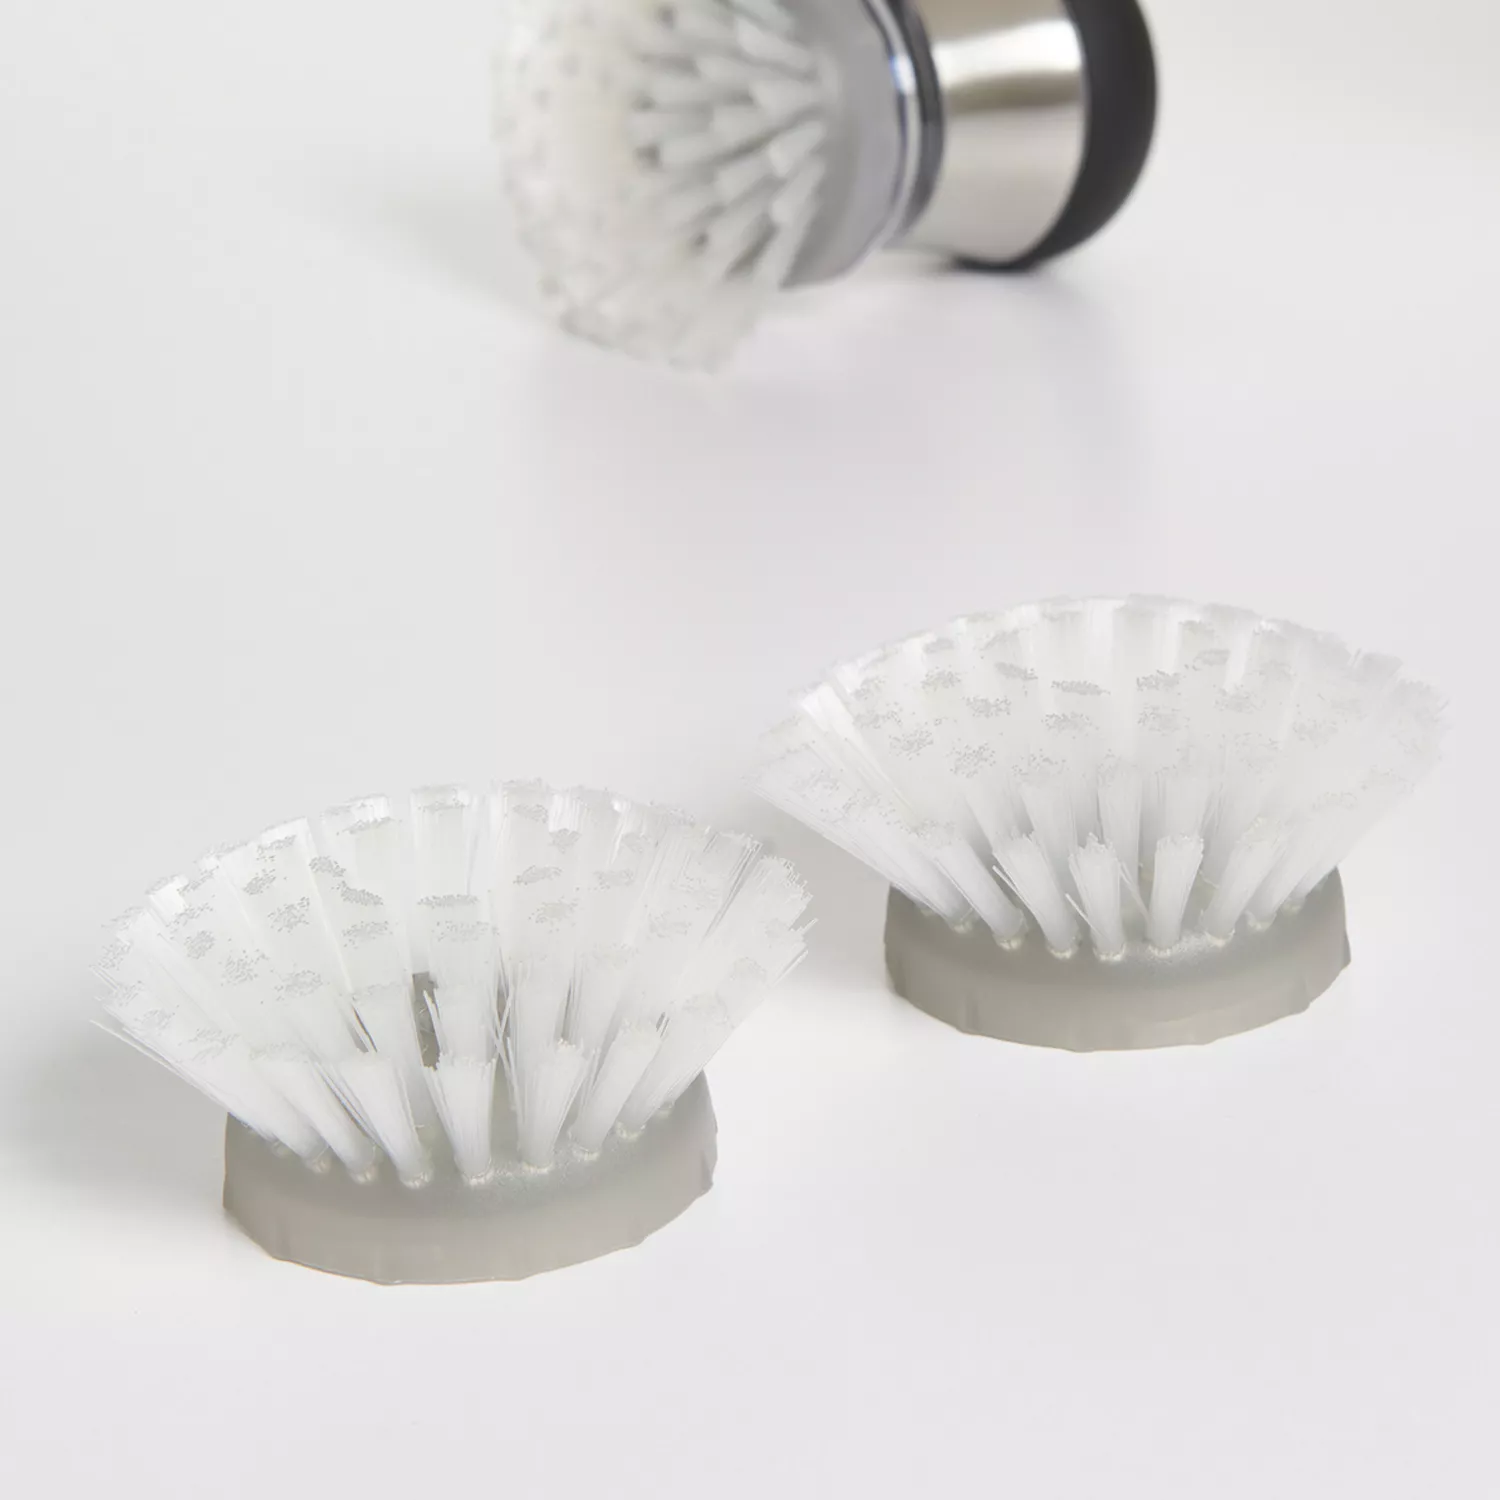 OXO Good Grips Soap Dispensing Dish Brush Refill (2-Pack) - Town